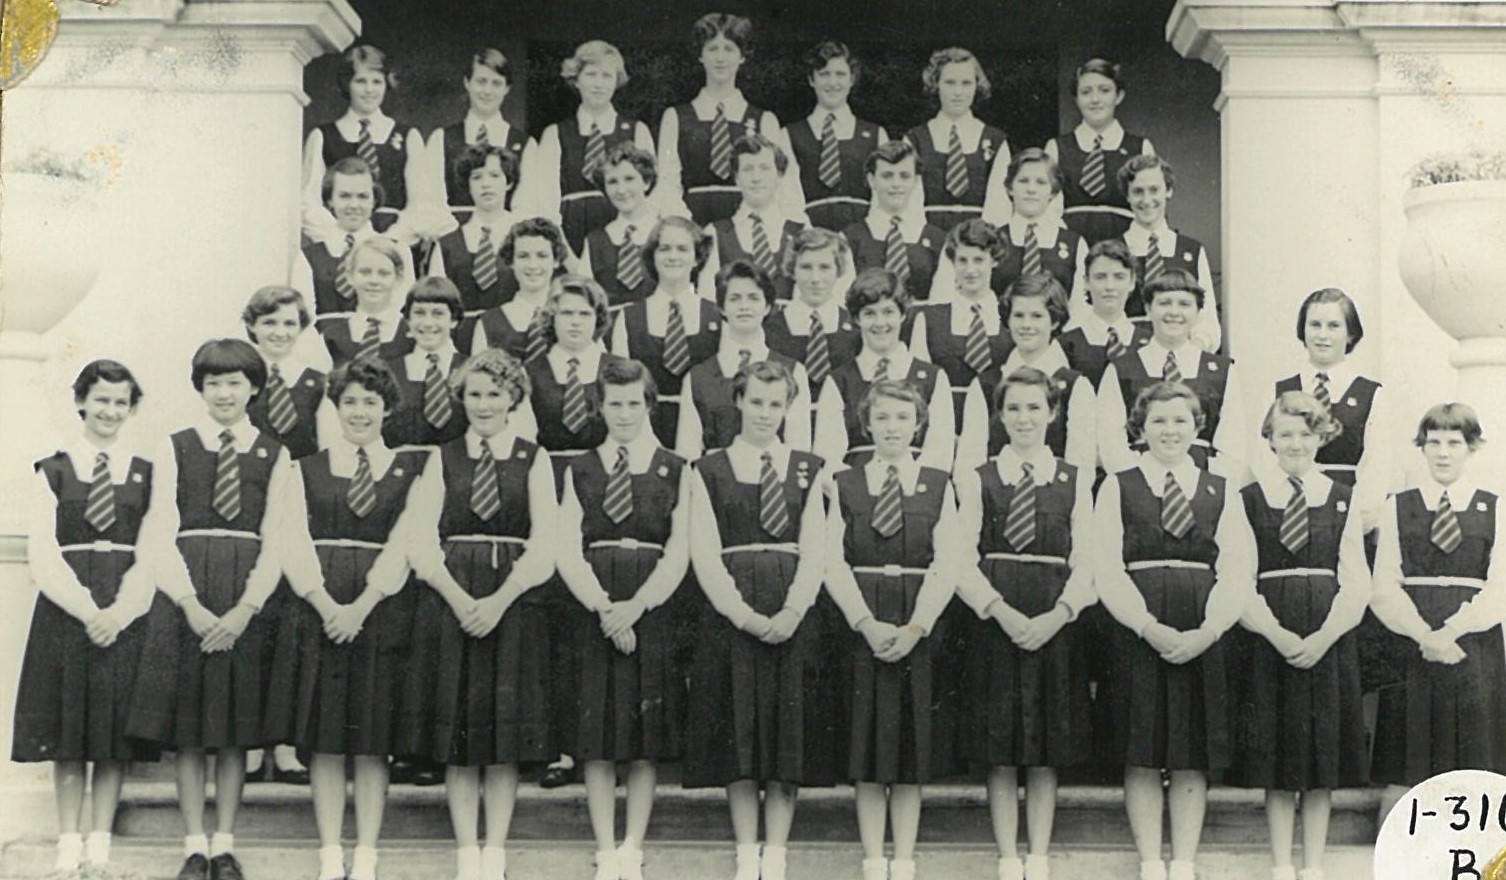 1956 Sub Juniors